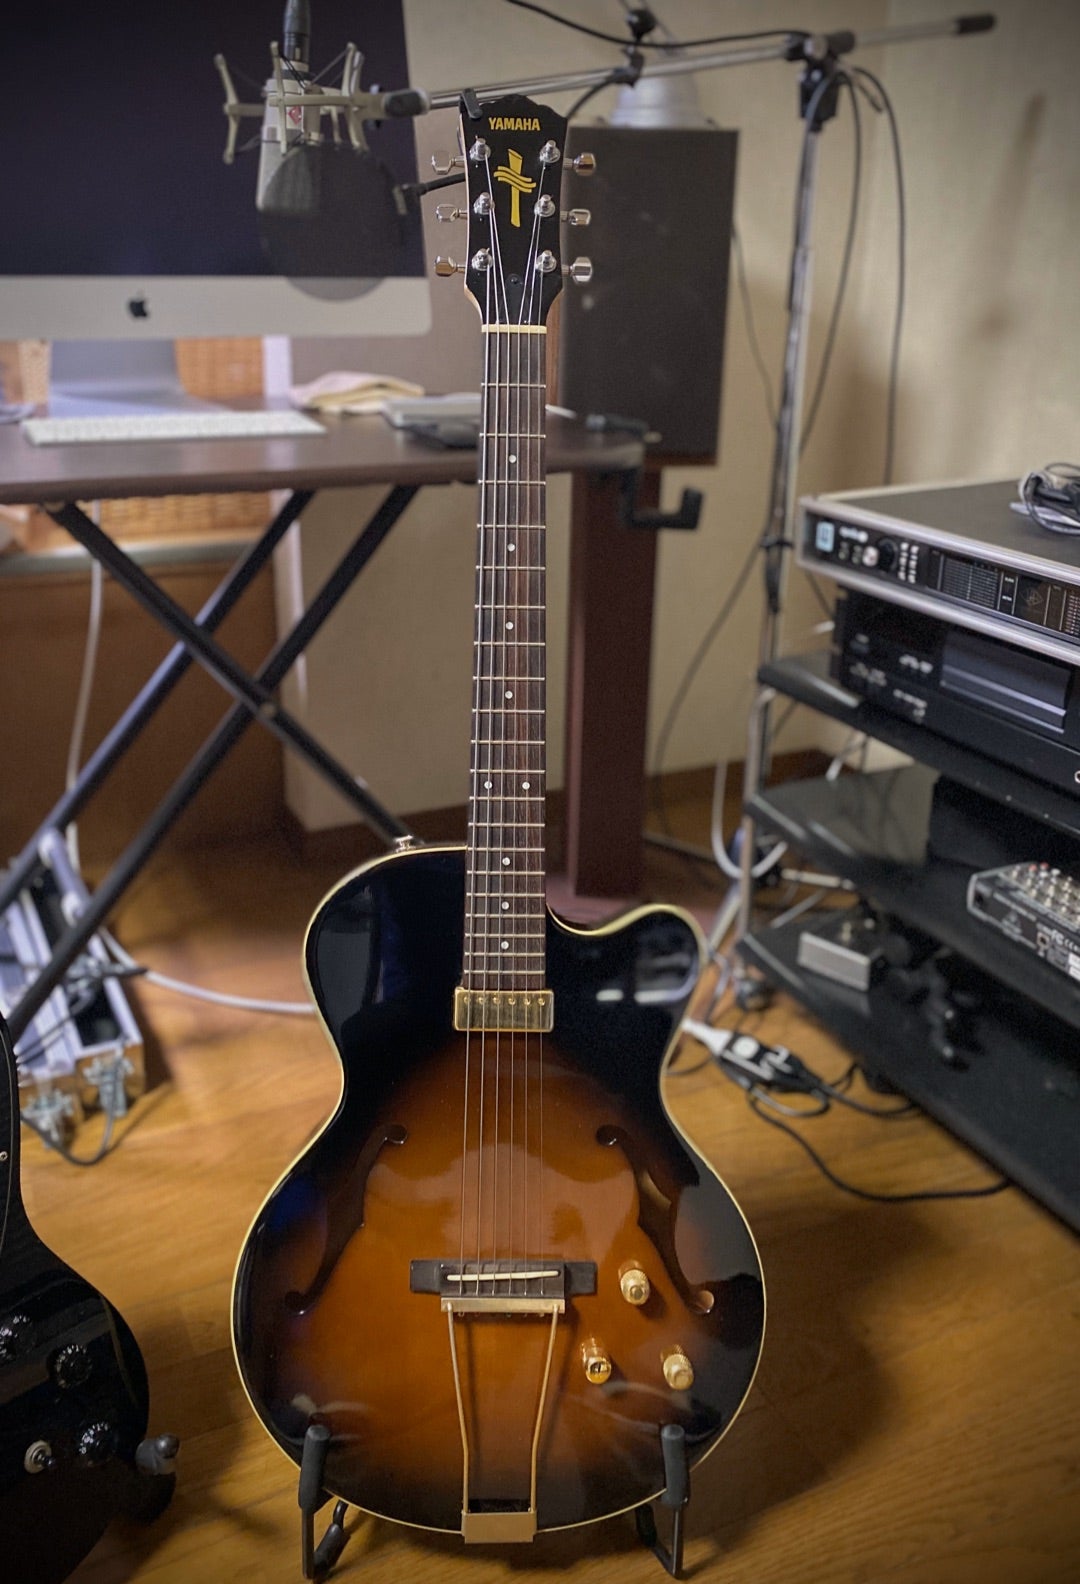 YAMAHA AEX-500(ギター) | 山口岩男オフィシャルブログ「希望のドアを 